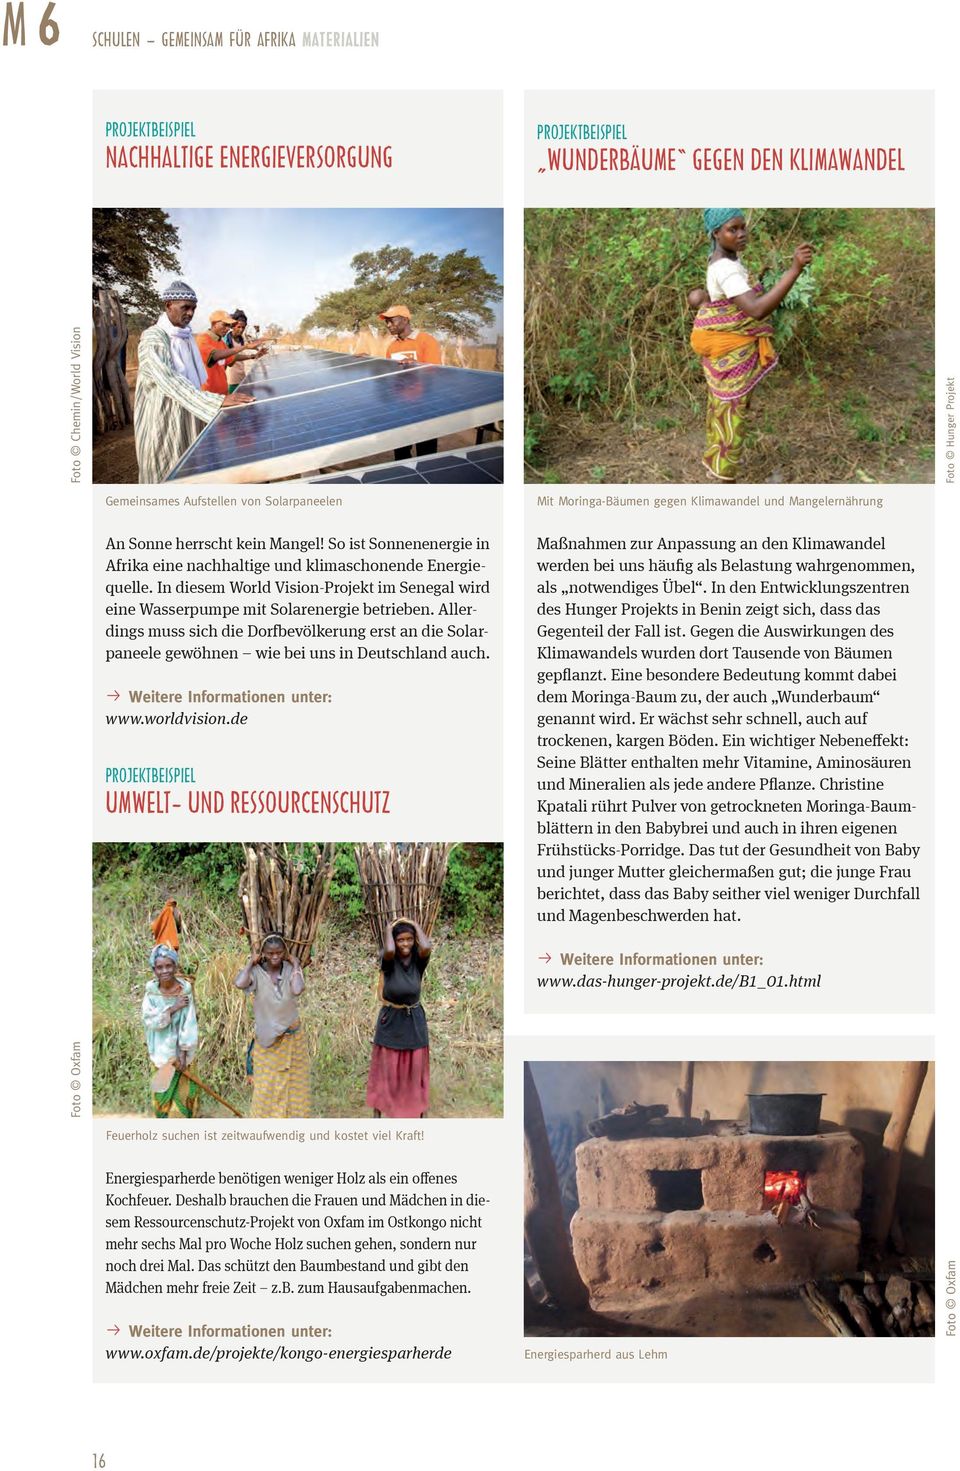 In diesem World Vision-Projekt im Senegal wird eine Wasserpumpe mit Solarenergie betrieben. Allerdings muss sich die Dorfbevölkerung erst an die Solarpaneele gewöhnen wie bei uns in Deutschland auch.